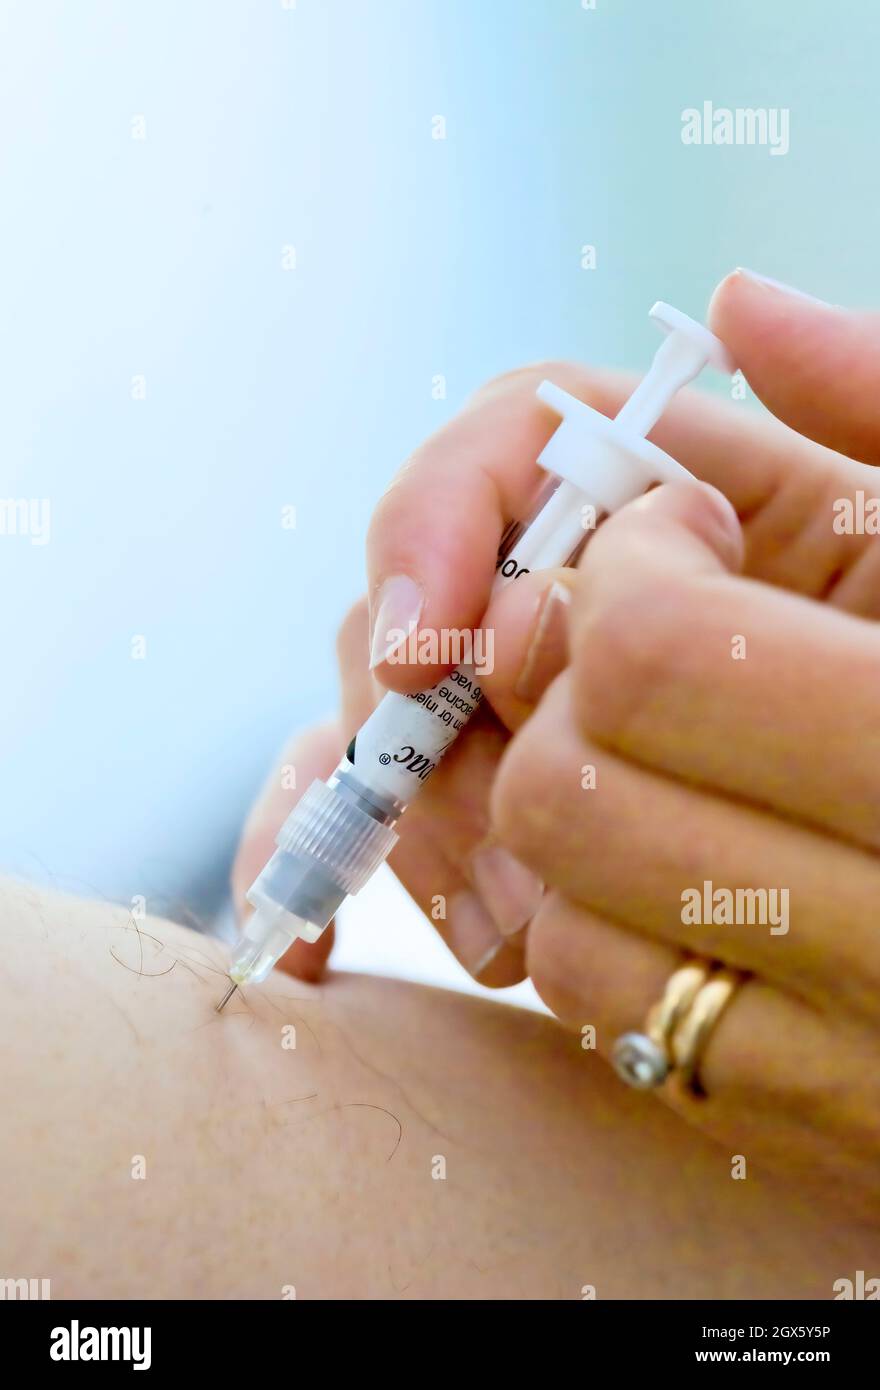 Paciente que recibe una vacuna contra la influenza, administrada por una aguja en la parte superior del brazo. Foto de stock